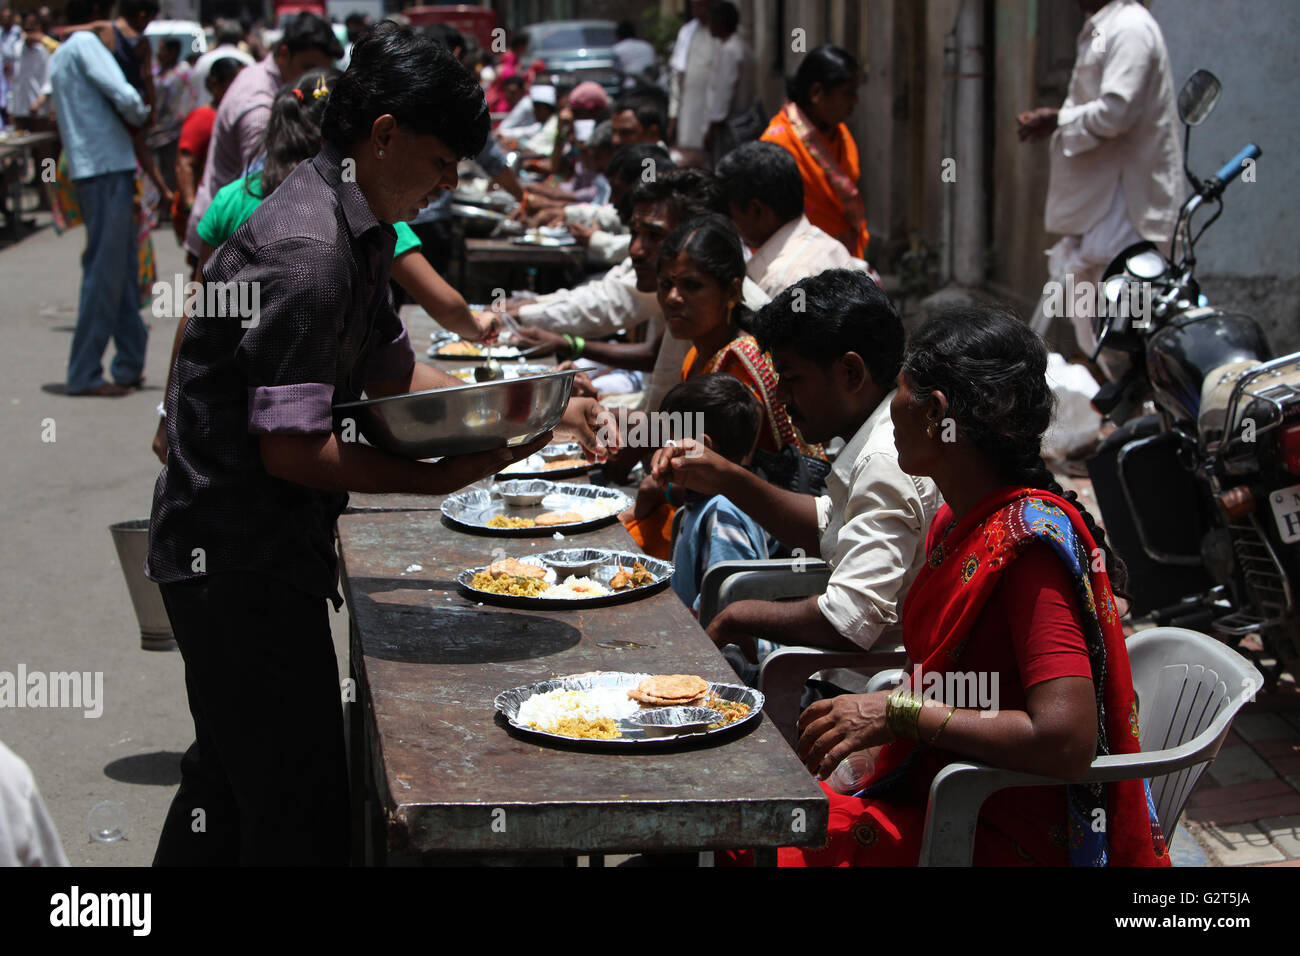 Pune, Indien - 11. Juli 2015: Indische Pilger bekannt wie Warkaris kostenlose Mahlzeit am Straßenrand während Wari Festiva zugestellt Stockfoto